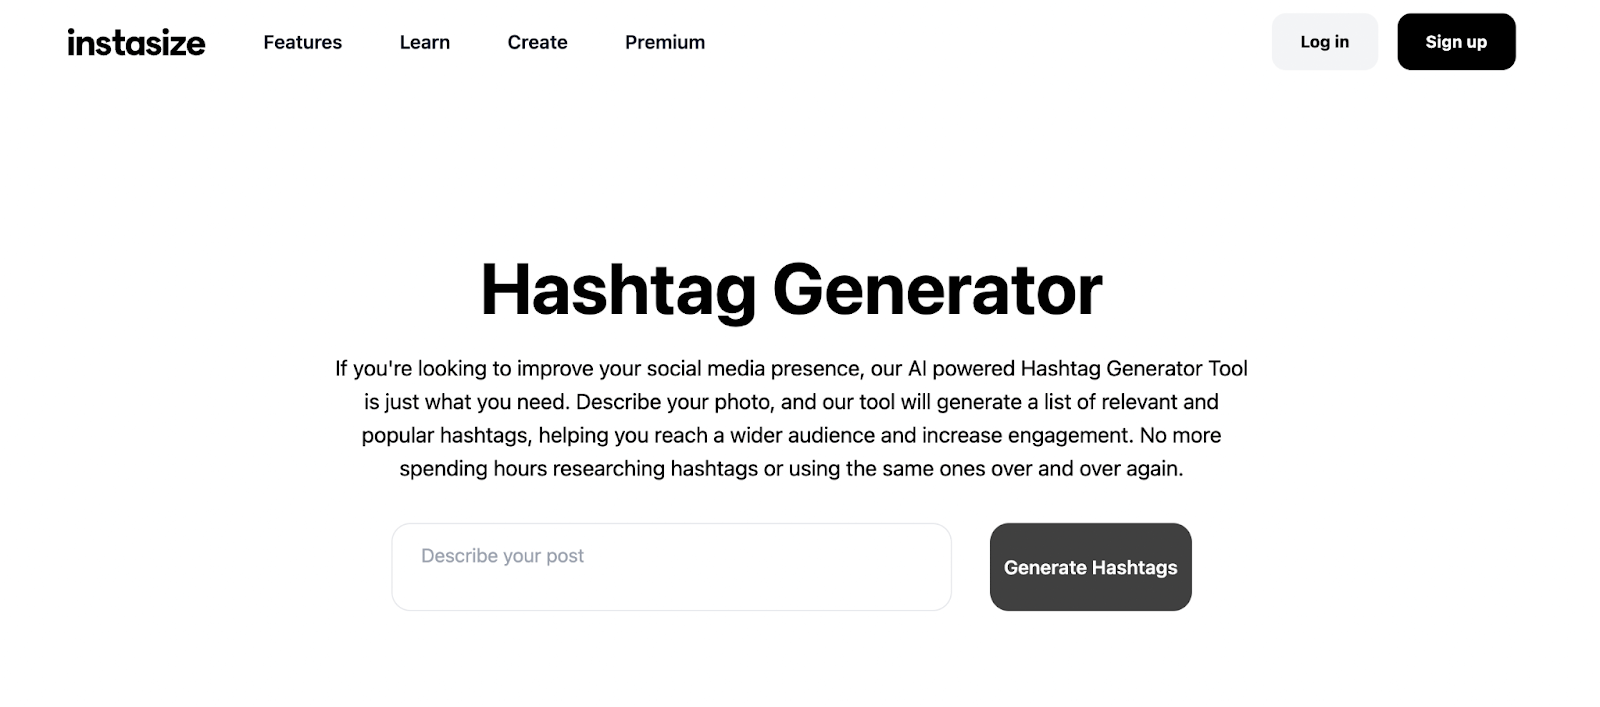 Instasize Hashtag Generator